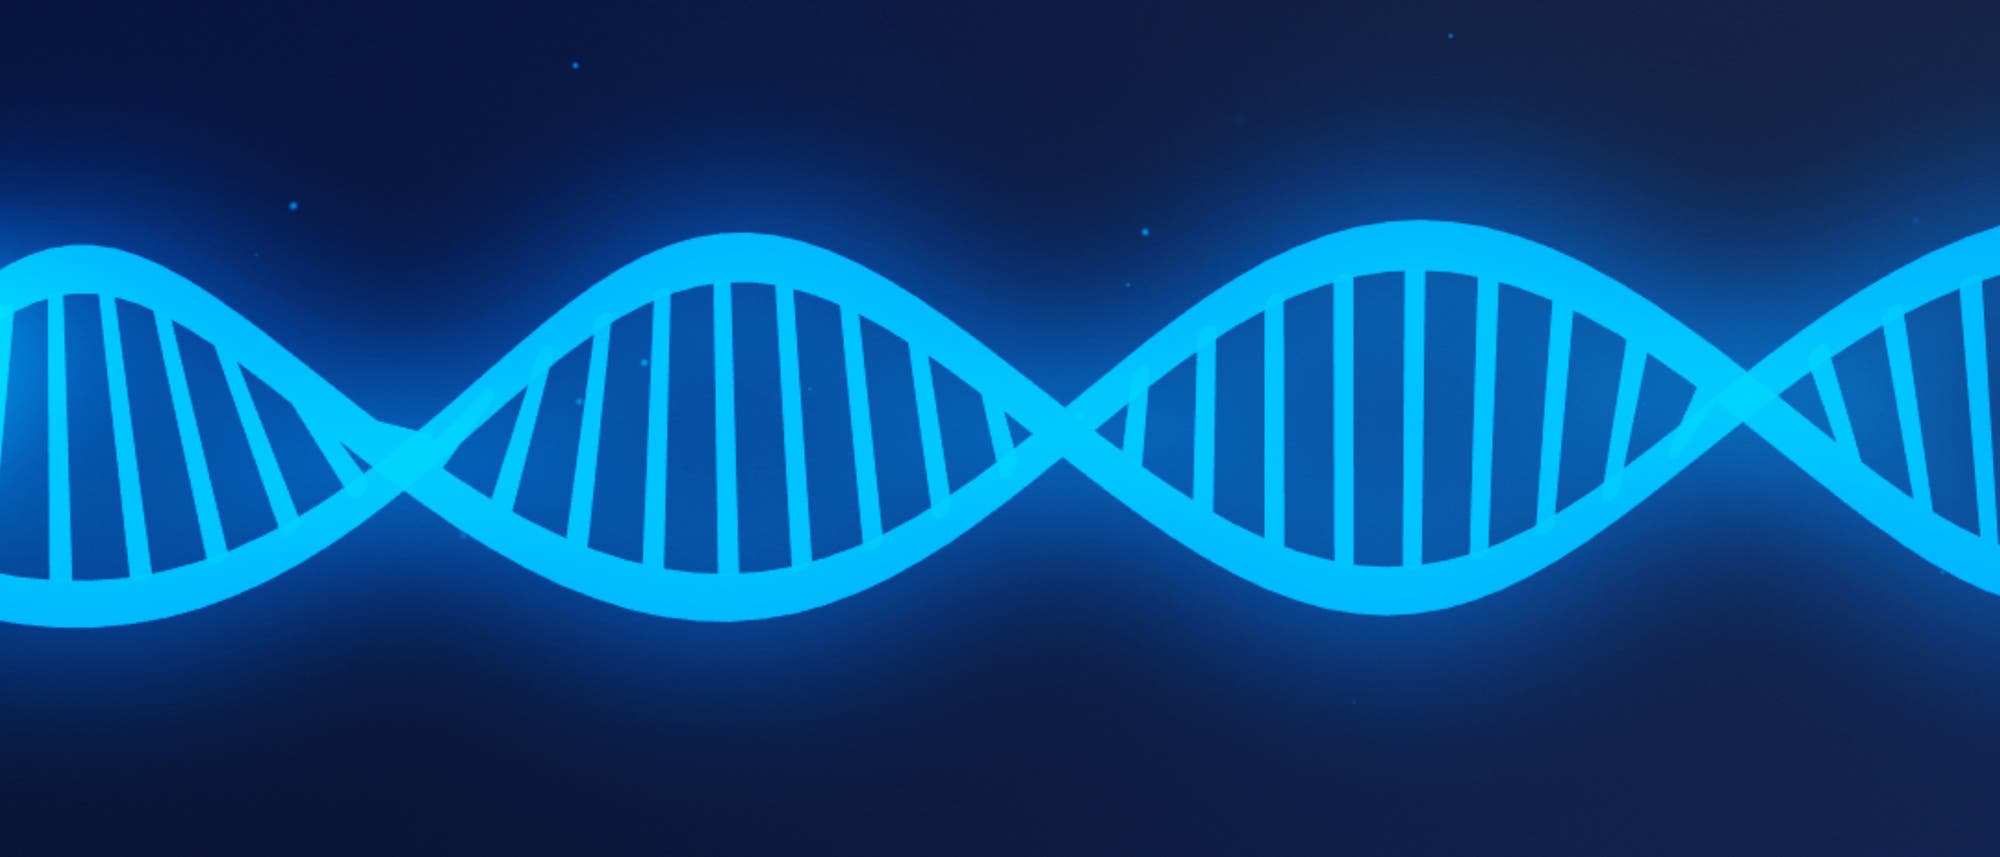 Illustration eines blau leuchtenden DNA-Stranges vor dunklem Hintergrund